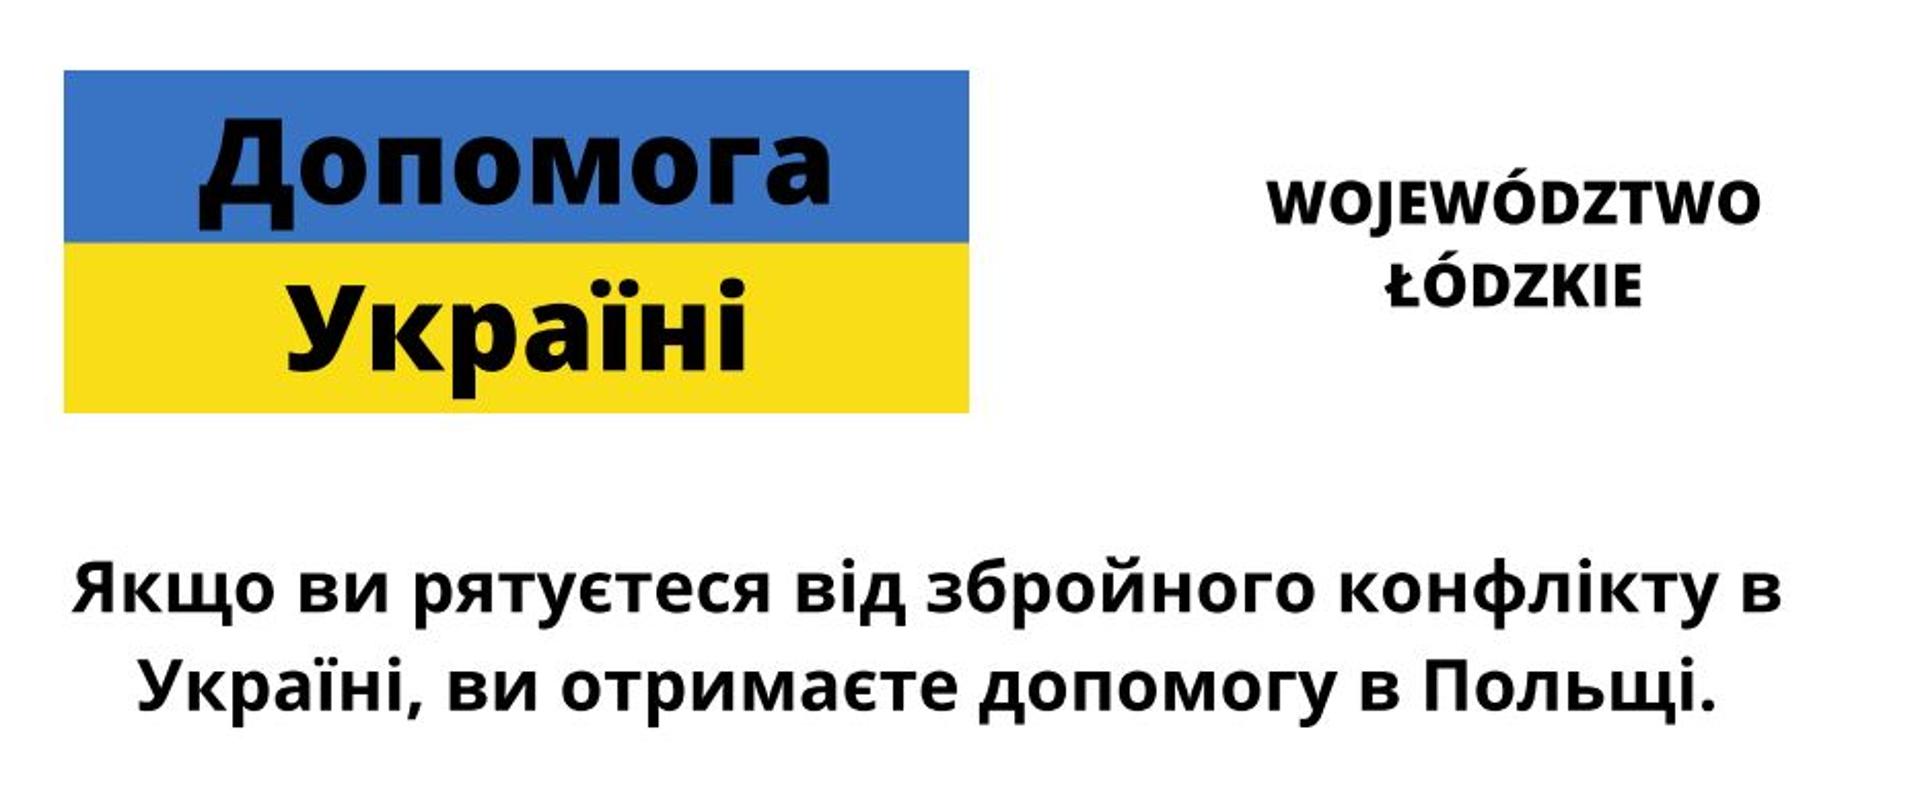 Grafika przedstawia tekst pisany cyrlicą dot. pomocy dla Ukrainy